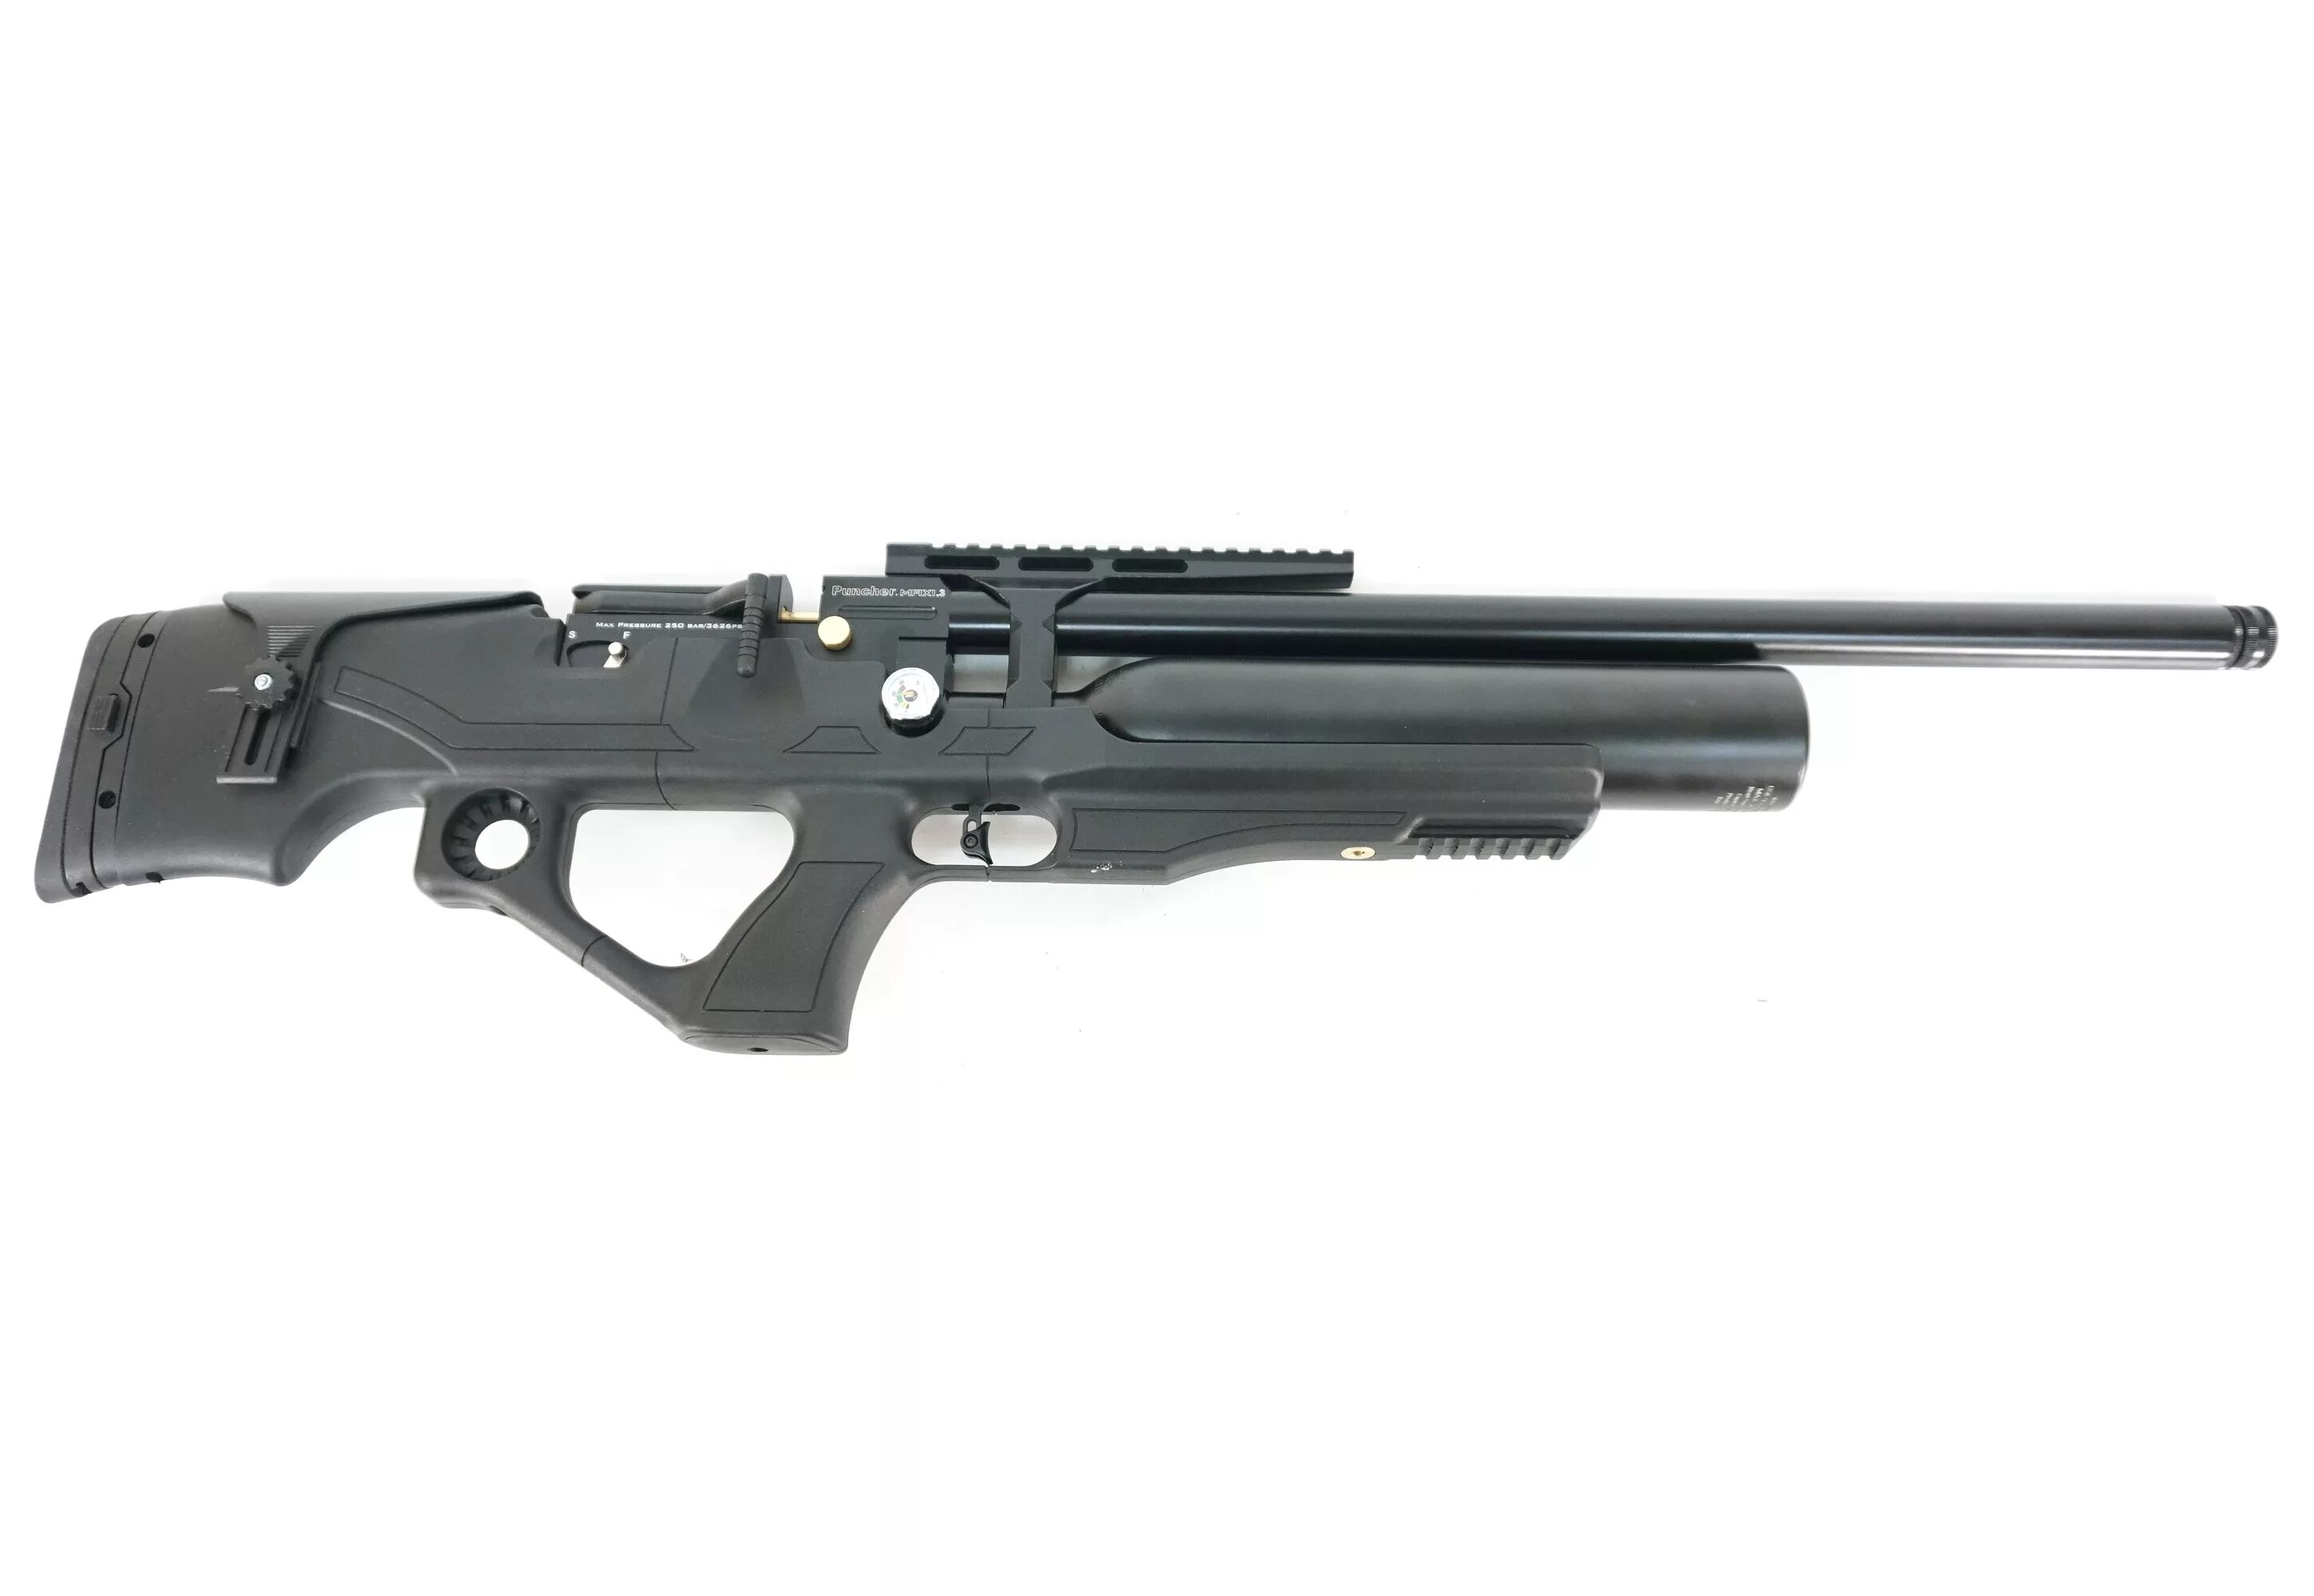 Пневматическая винтовка Kral Puncher Maxi 3 6.35. Пневматическая винтовка Kral Puncher Maxi s (пластик, PCP, 3 Дж) 6,35 мм. Kral Puncher Maxi 3 Nemesis PCP 5.5 мм. Винтовка PCP Kral Puncher Maxi 3 Nemesis кал 6,35мм. Крал пинчер